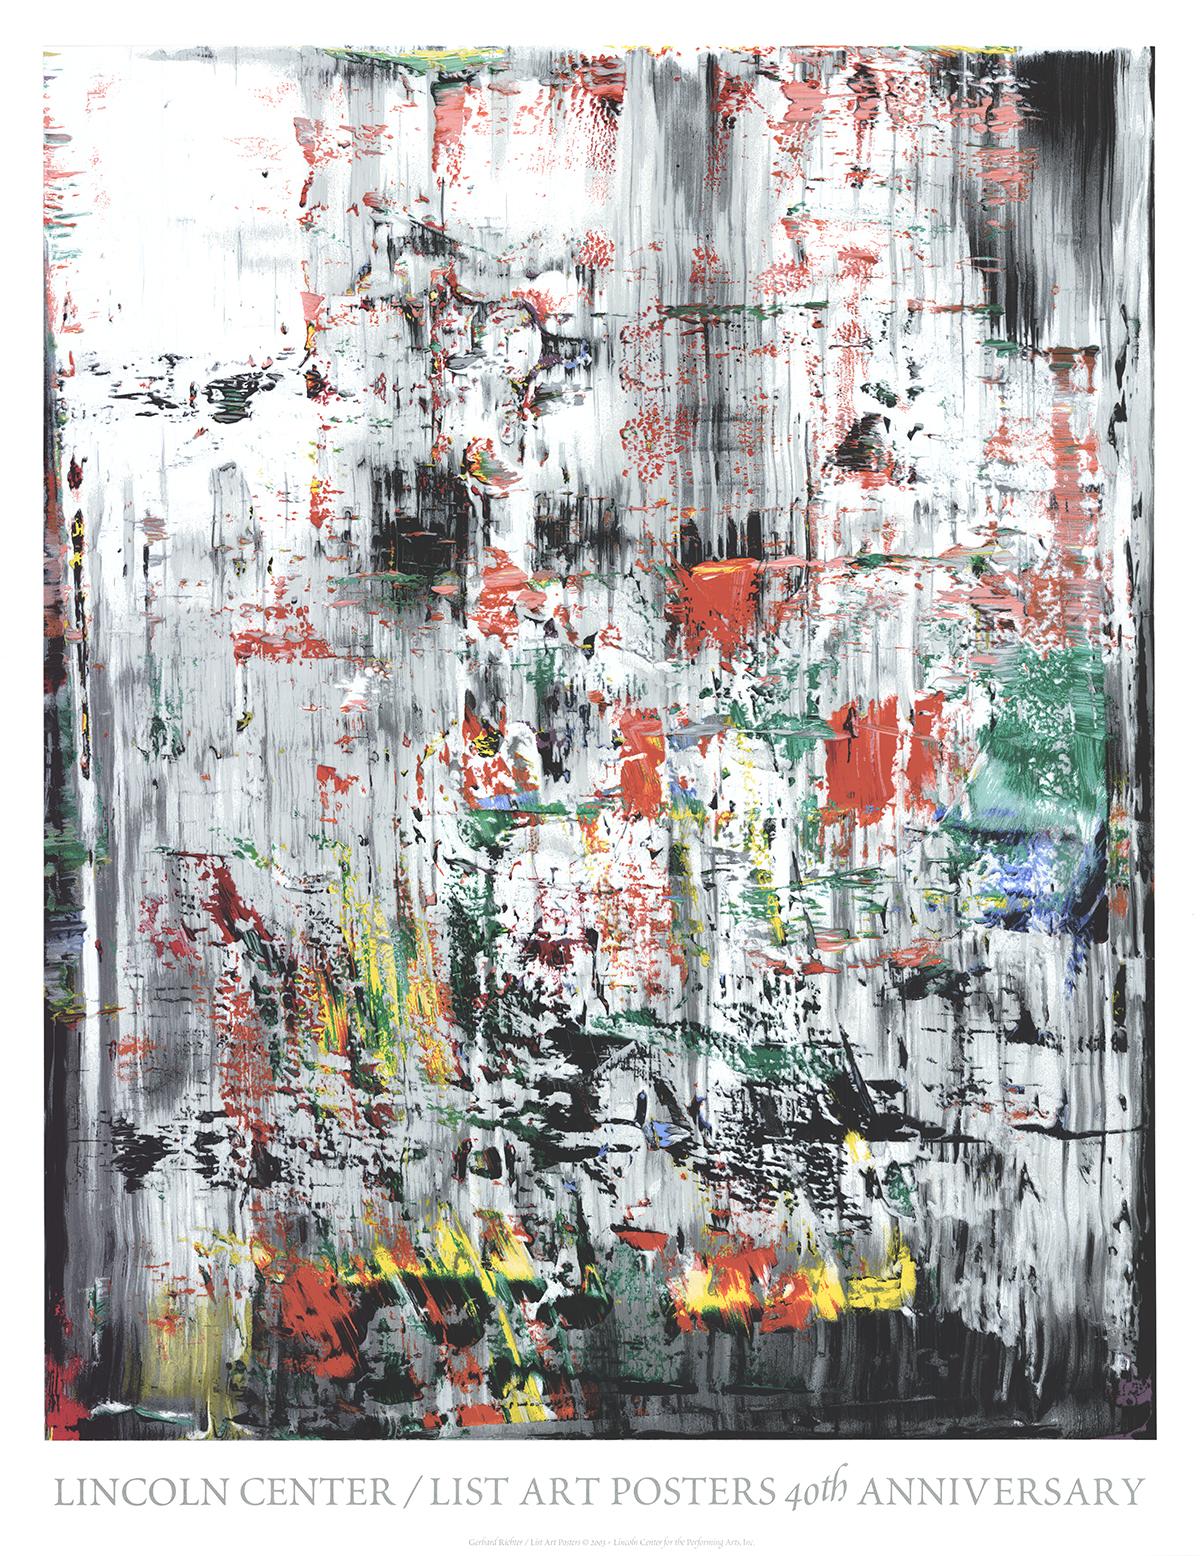 Plakat von Gerhard Richter in limitierter Auflage mit dem Titel "Eis 2", veröffentlicht vom Lincoln Center Poster Program im Jahr 2003. Gedruckt von Brand X. Es hat 46 Farbbildschirme. 

Richters IDEA des Stils ist das Vergnügen, überhaupt keinen